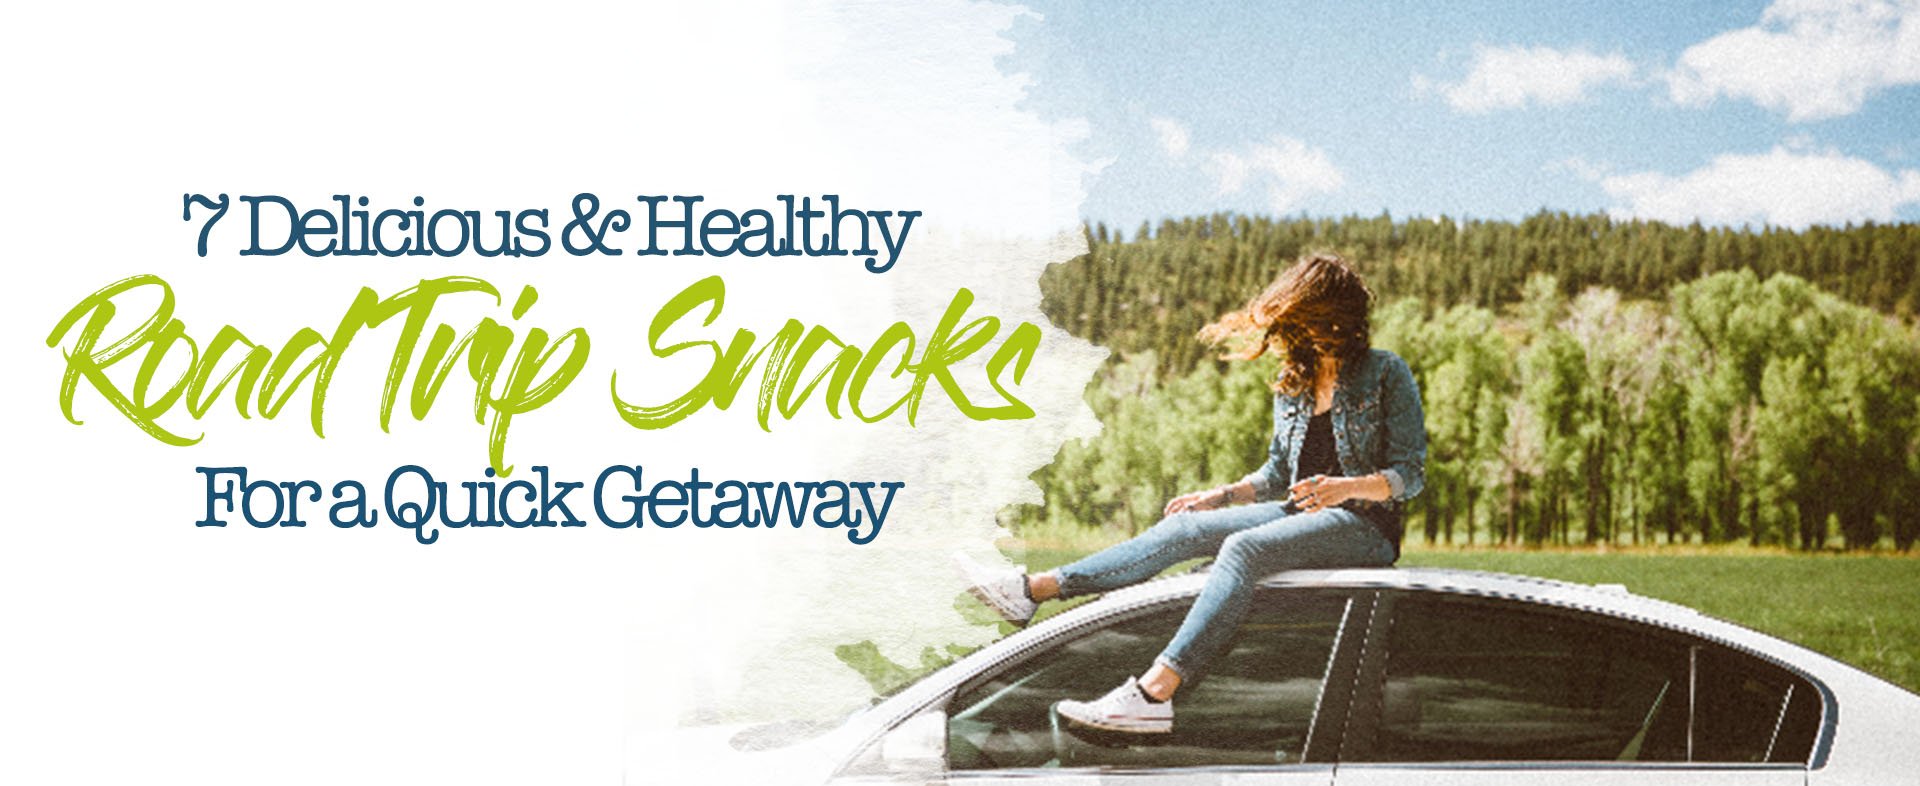 7 Delicious & Healthy Road Trip Snacks For a Quick Getaway